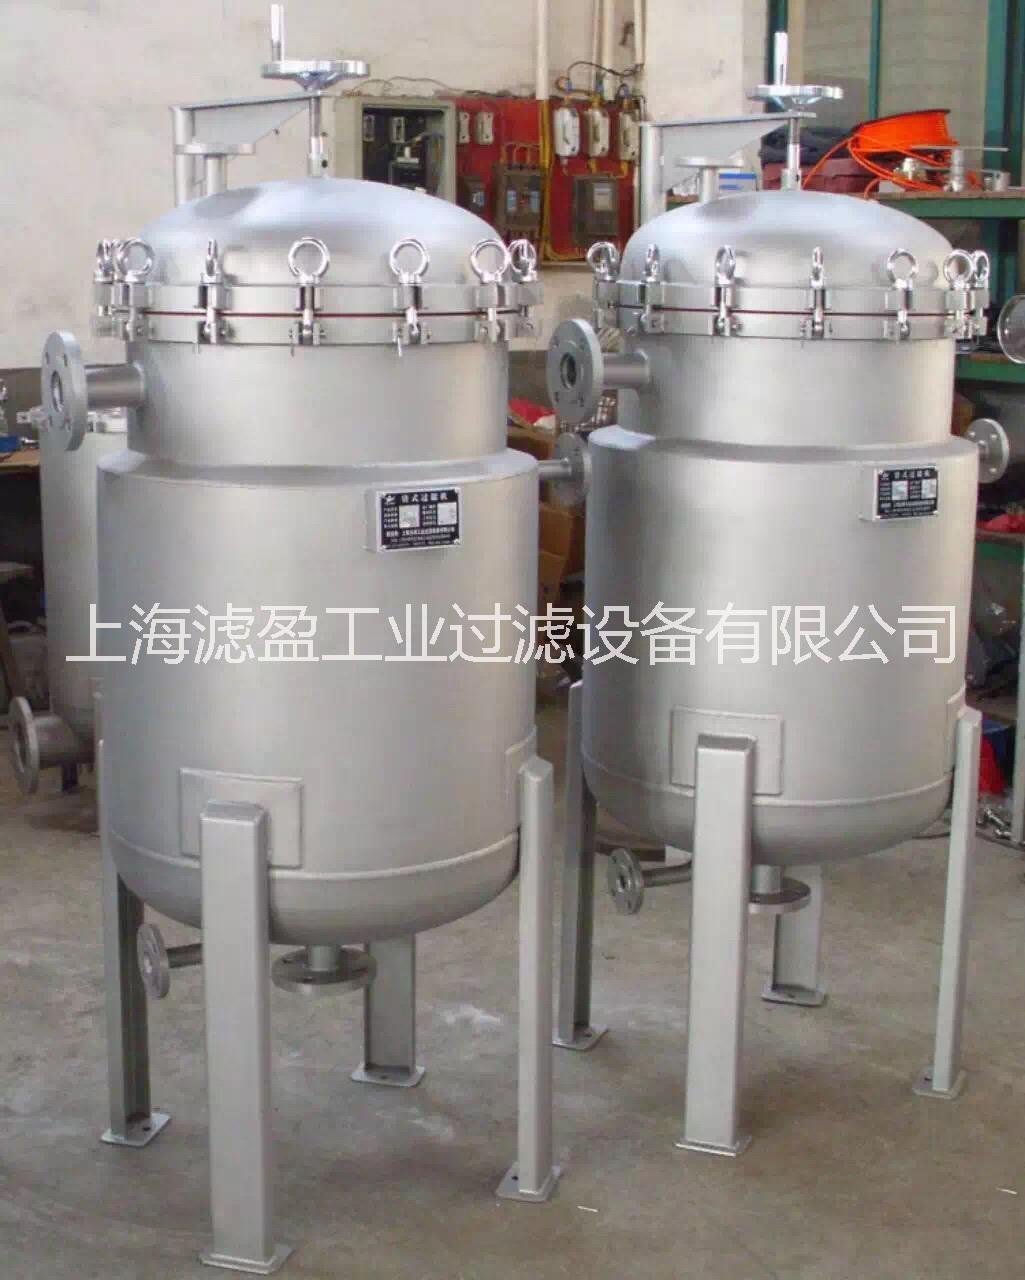 上海市夹层式过滤器厂家供应夹层式过滤器 保温袋式过滤器  不锈钢保温过滤器